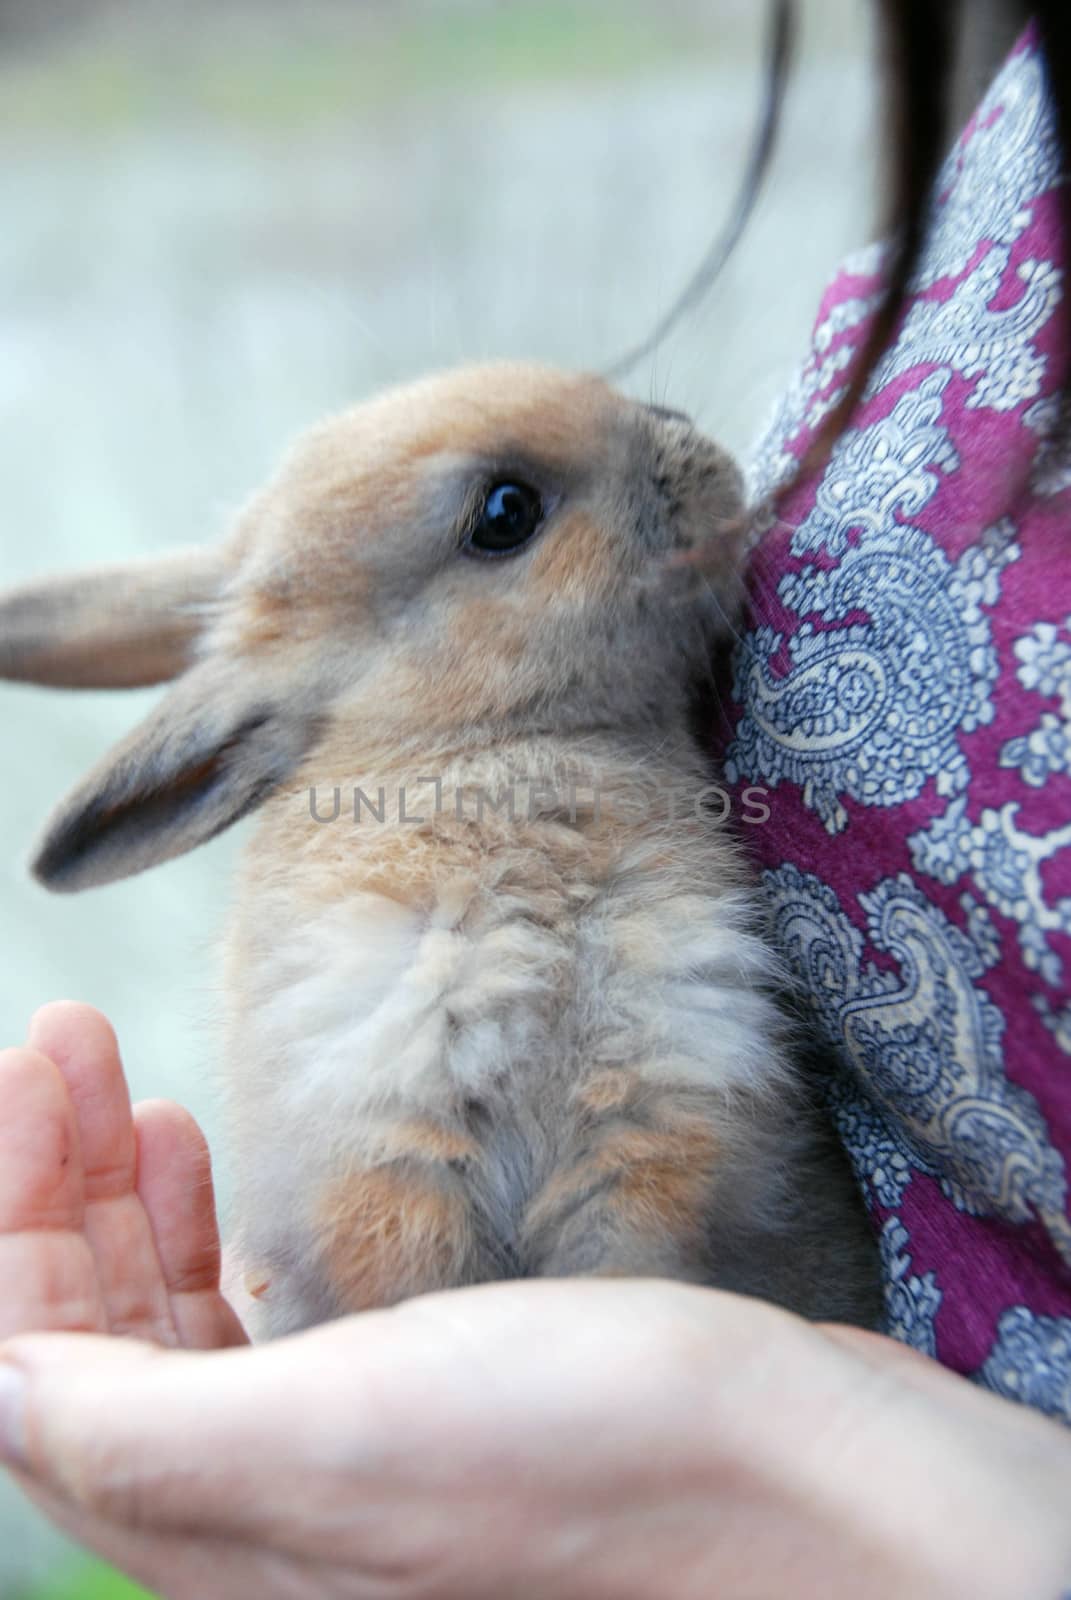 Rabbit in her hands